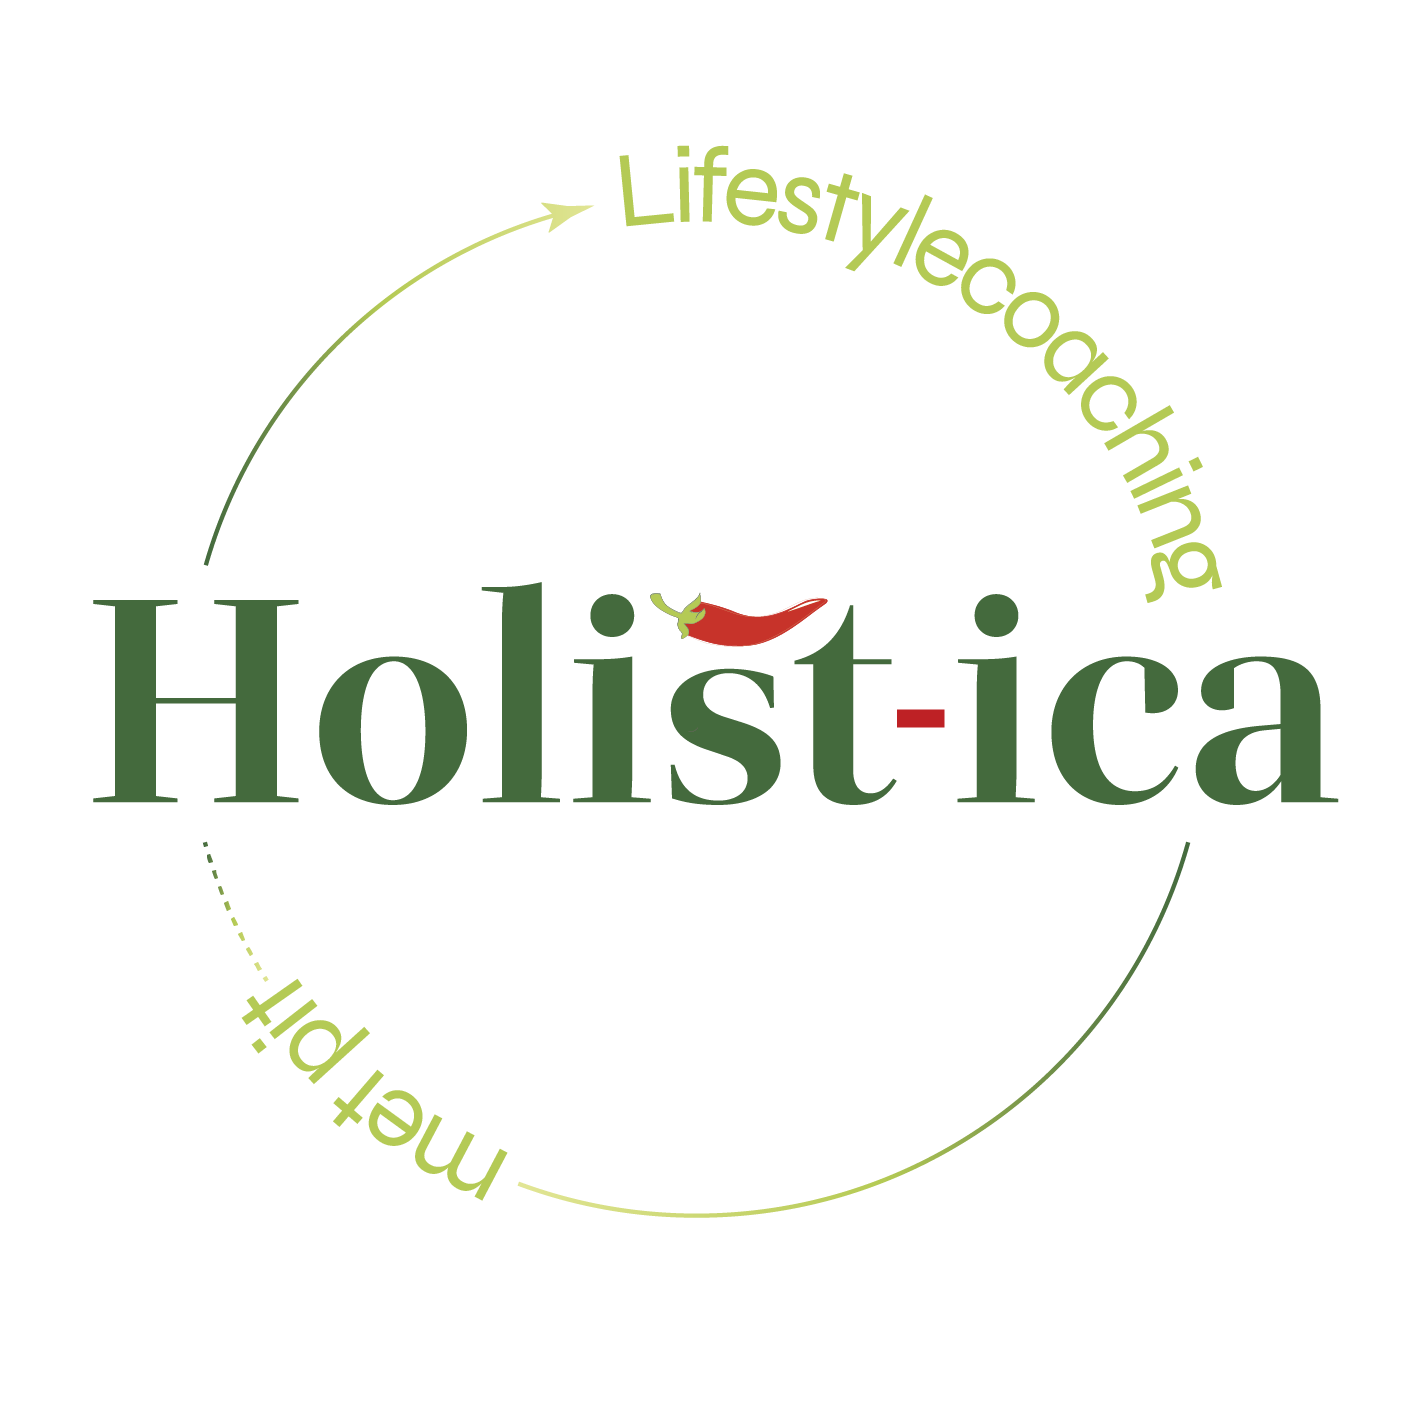 Holist-ica